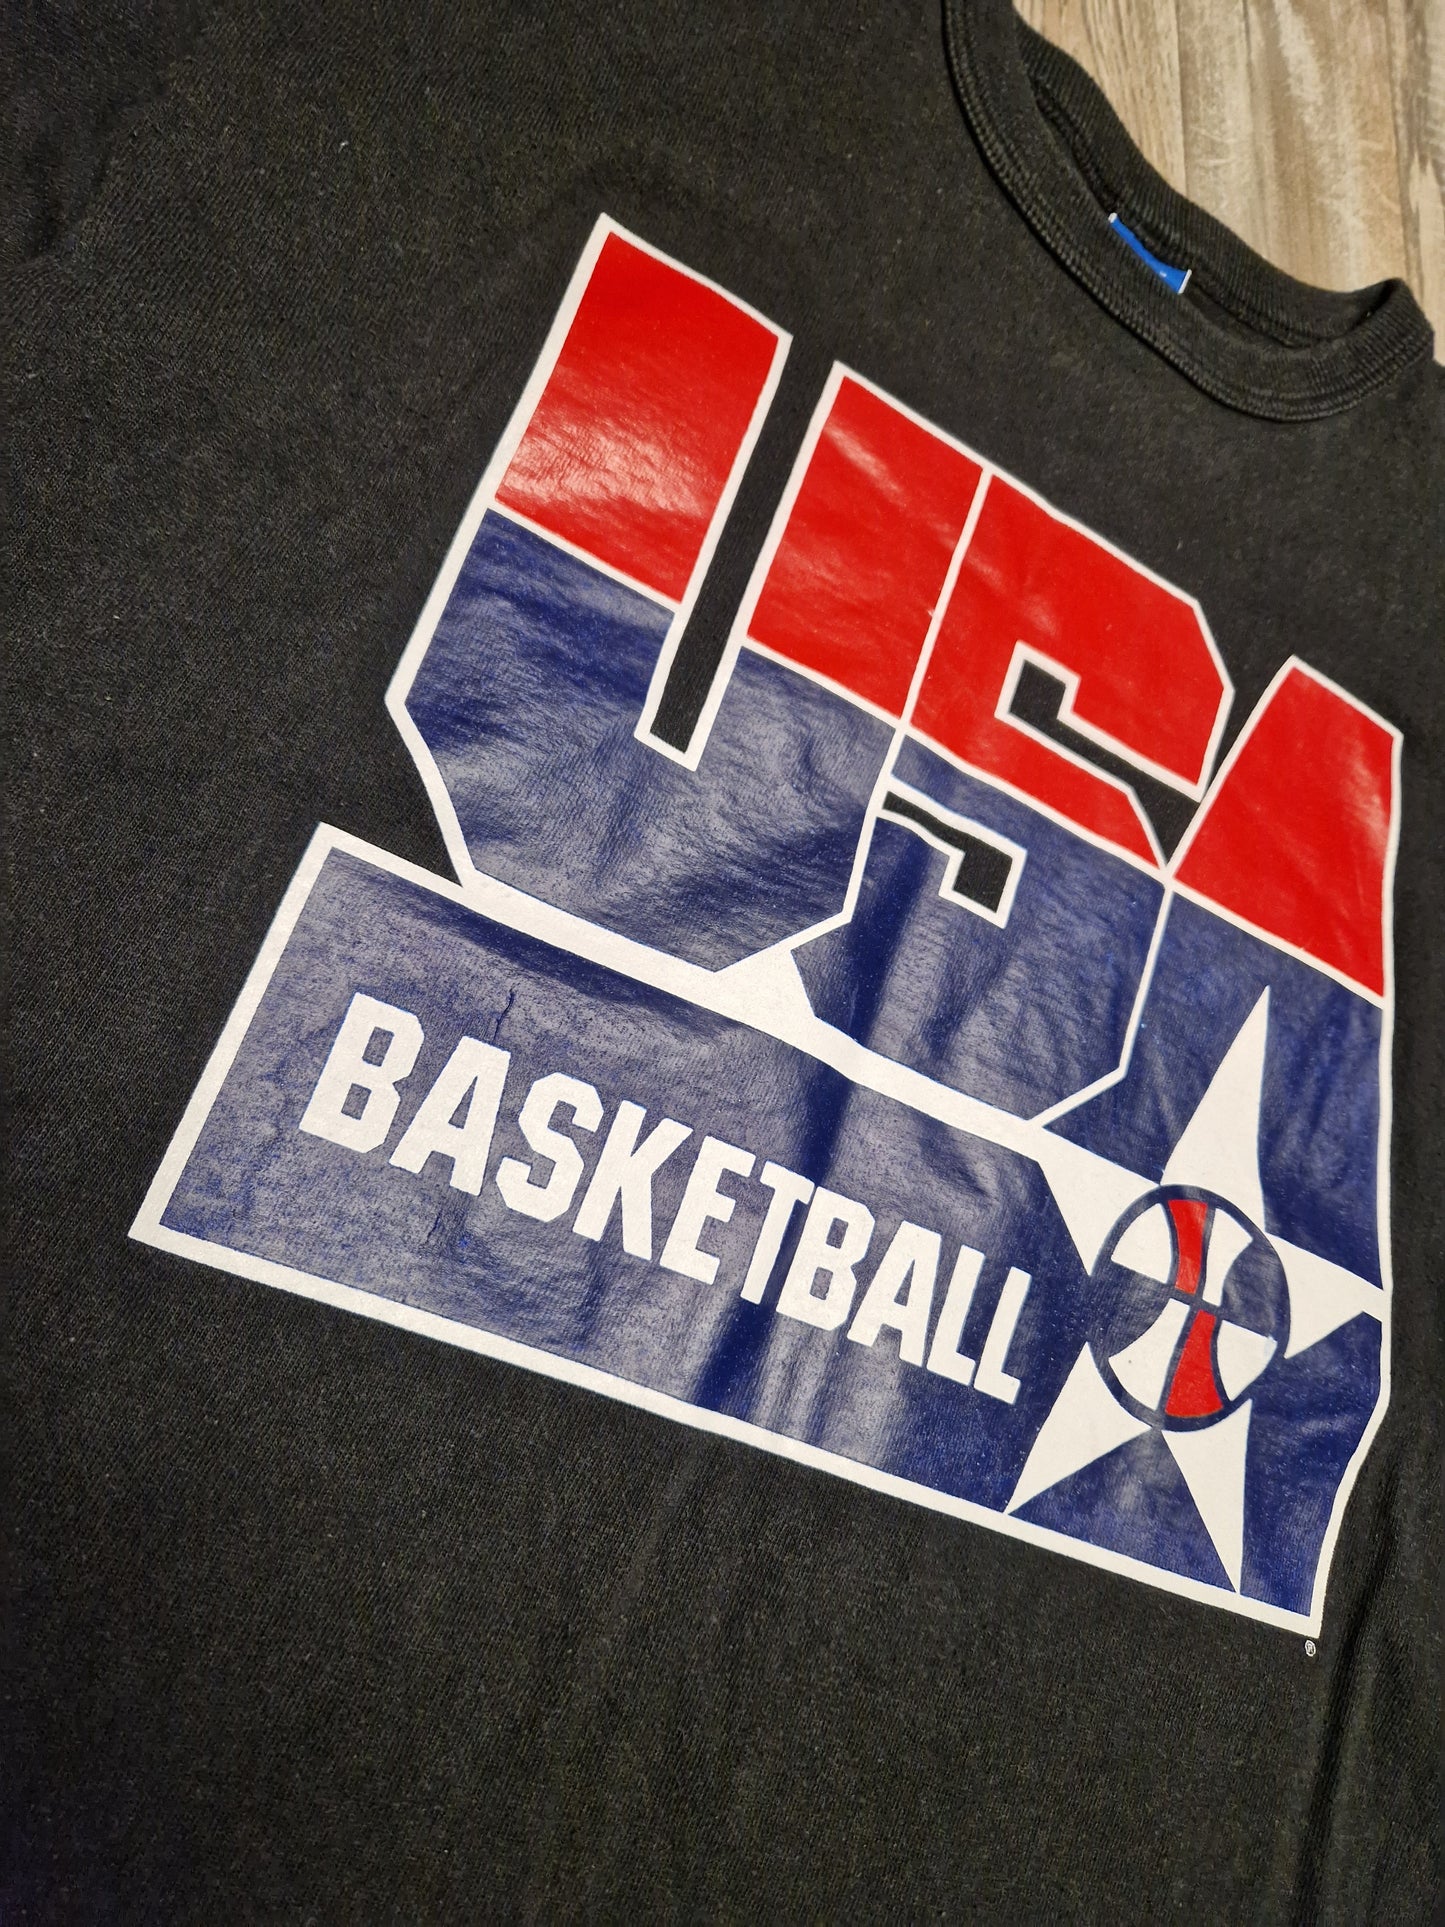 Team USA T-Shirt Size XL